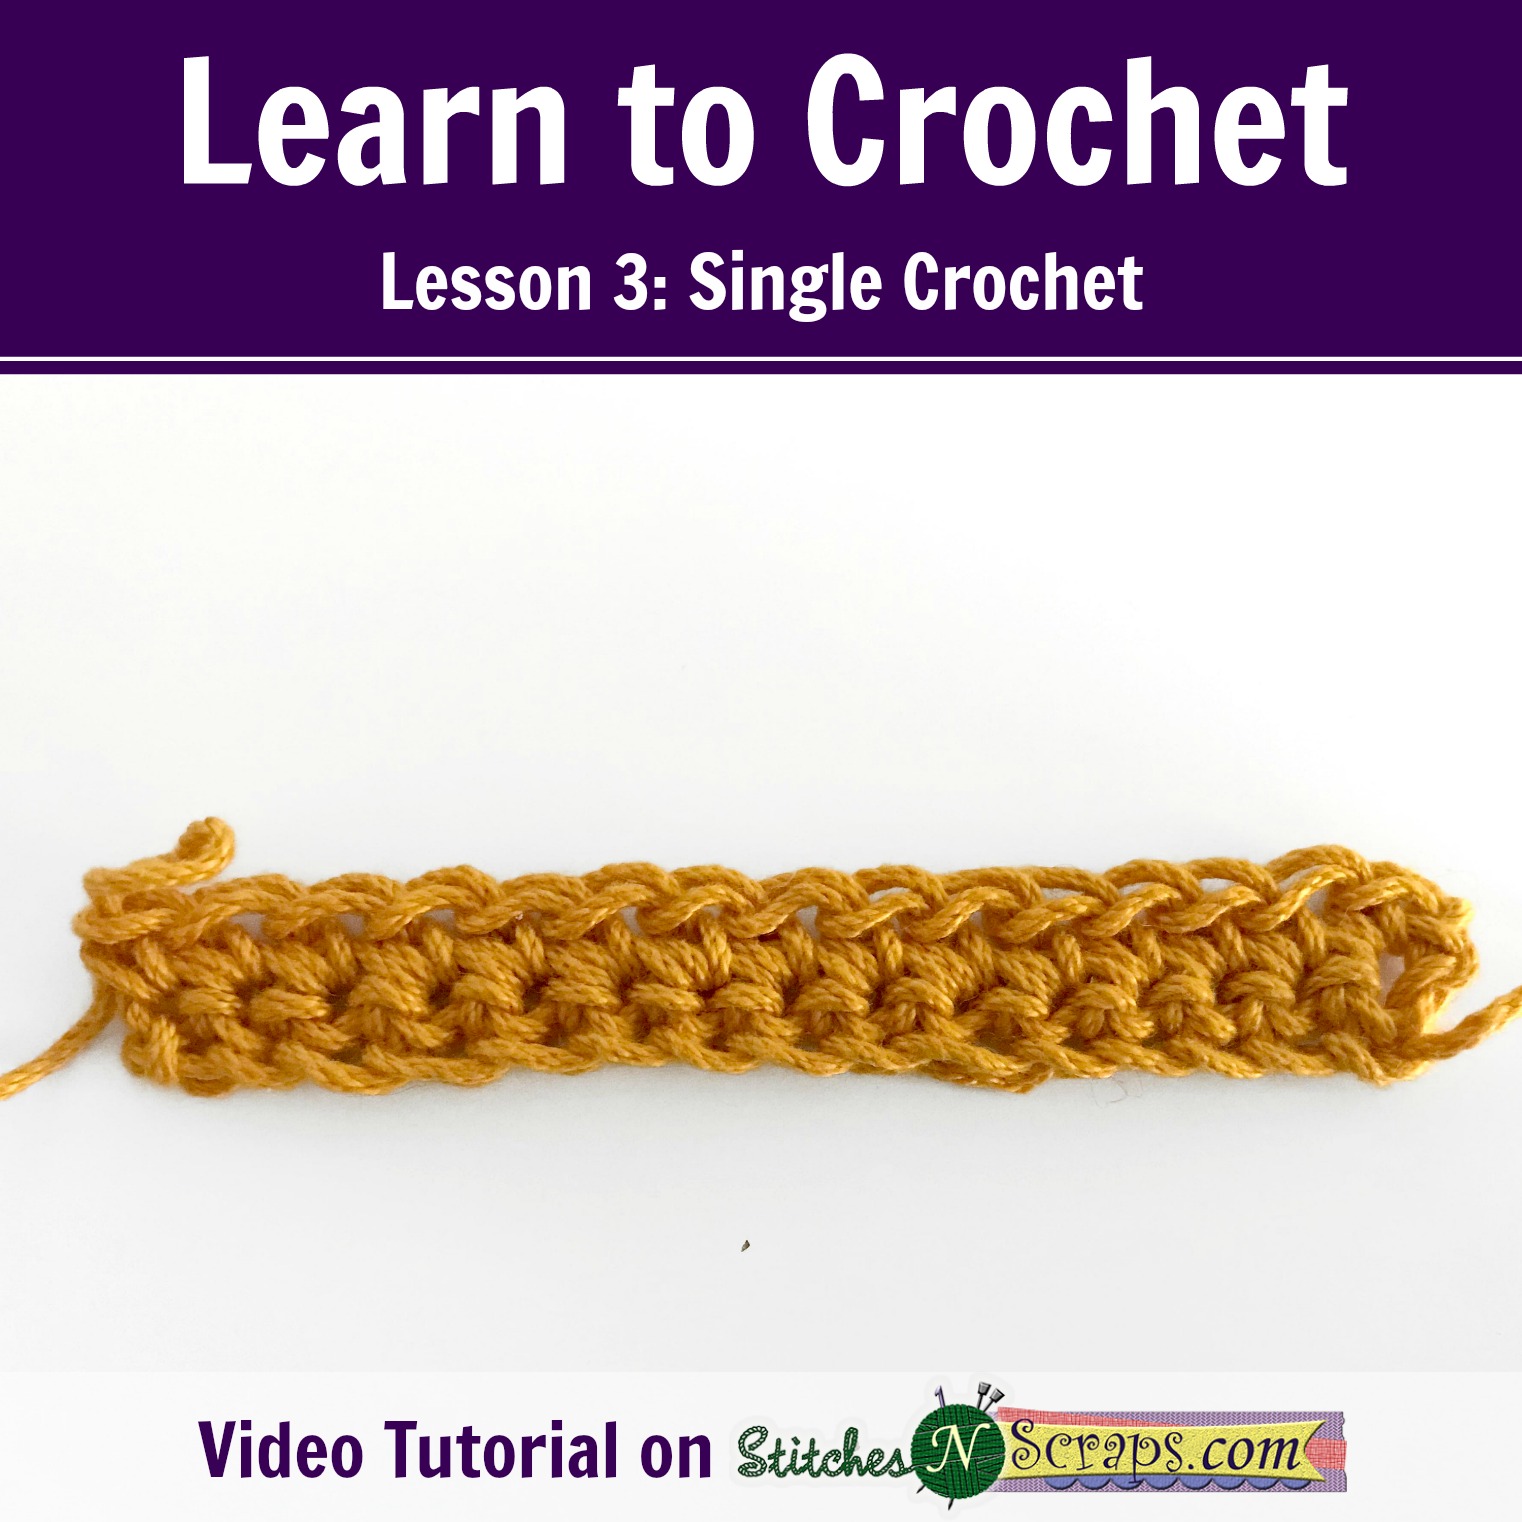 Learn to Crochet - Lesson 3 - Single Crochet